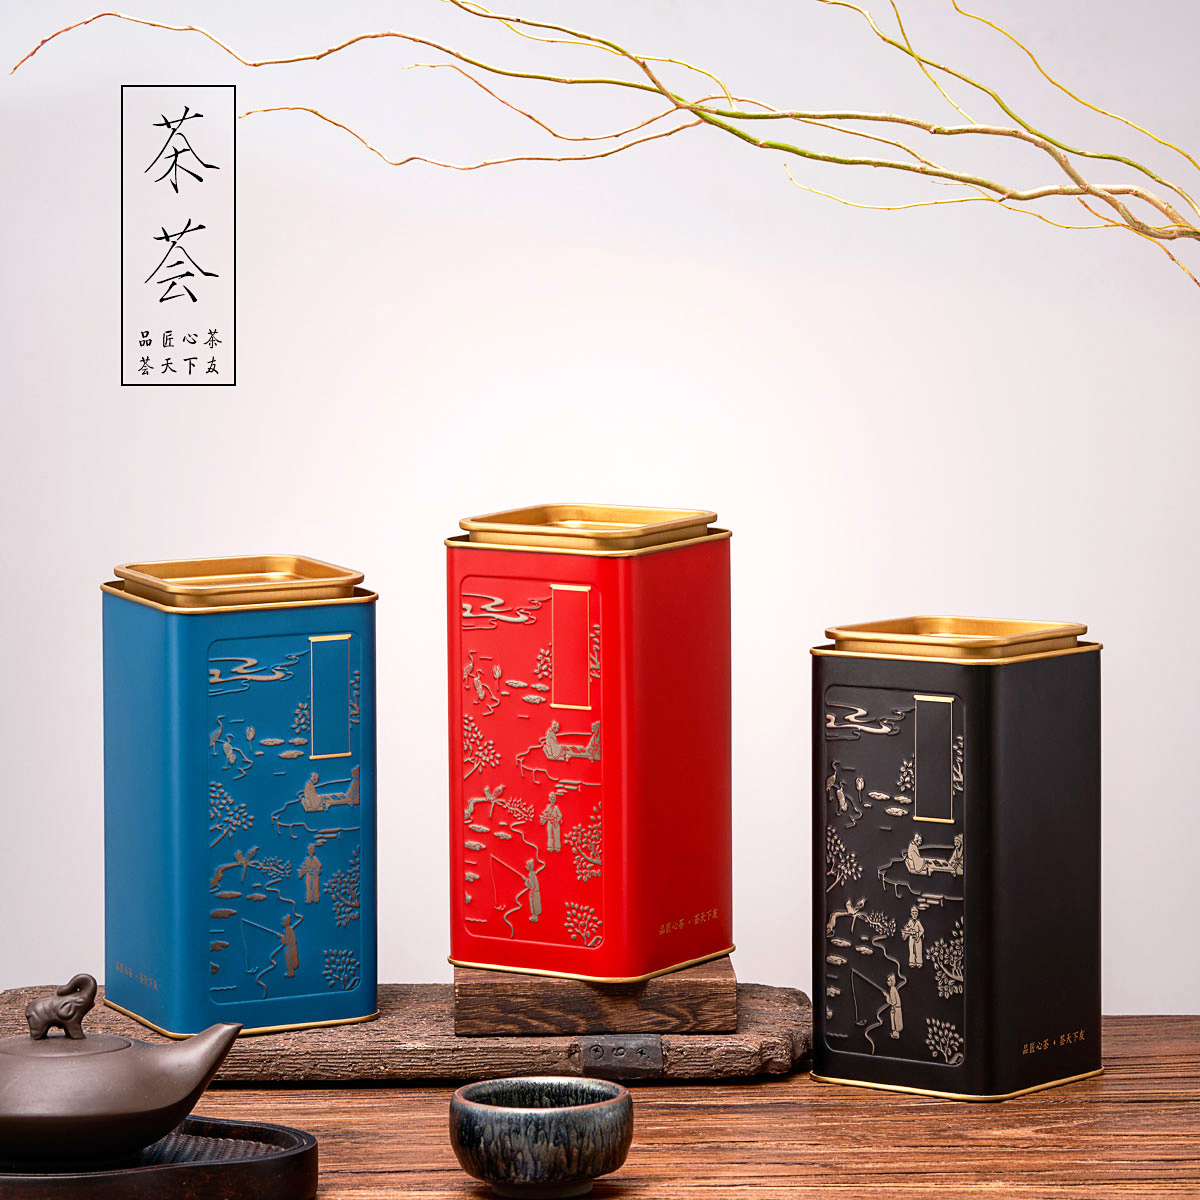 小号半斤通用茶叶罐铁罐红茶绿茶黑茶六堡茶复古茶叶包装盒空铁盒